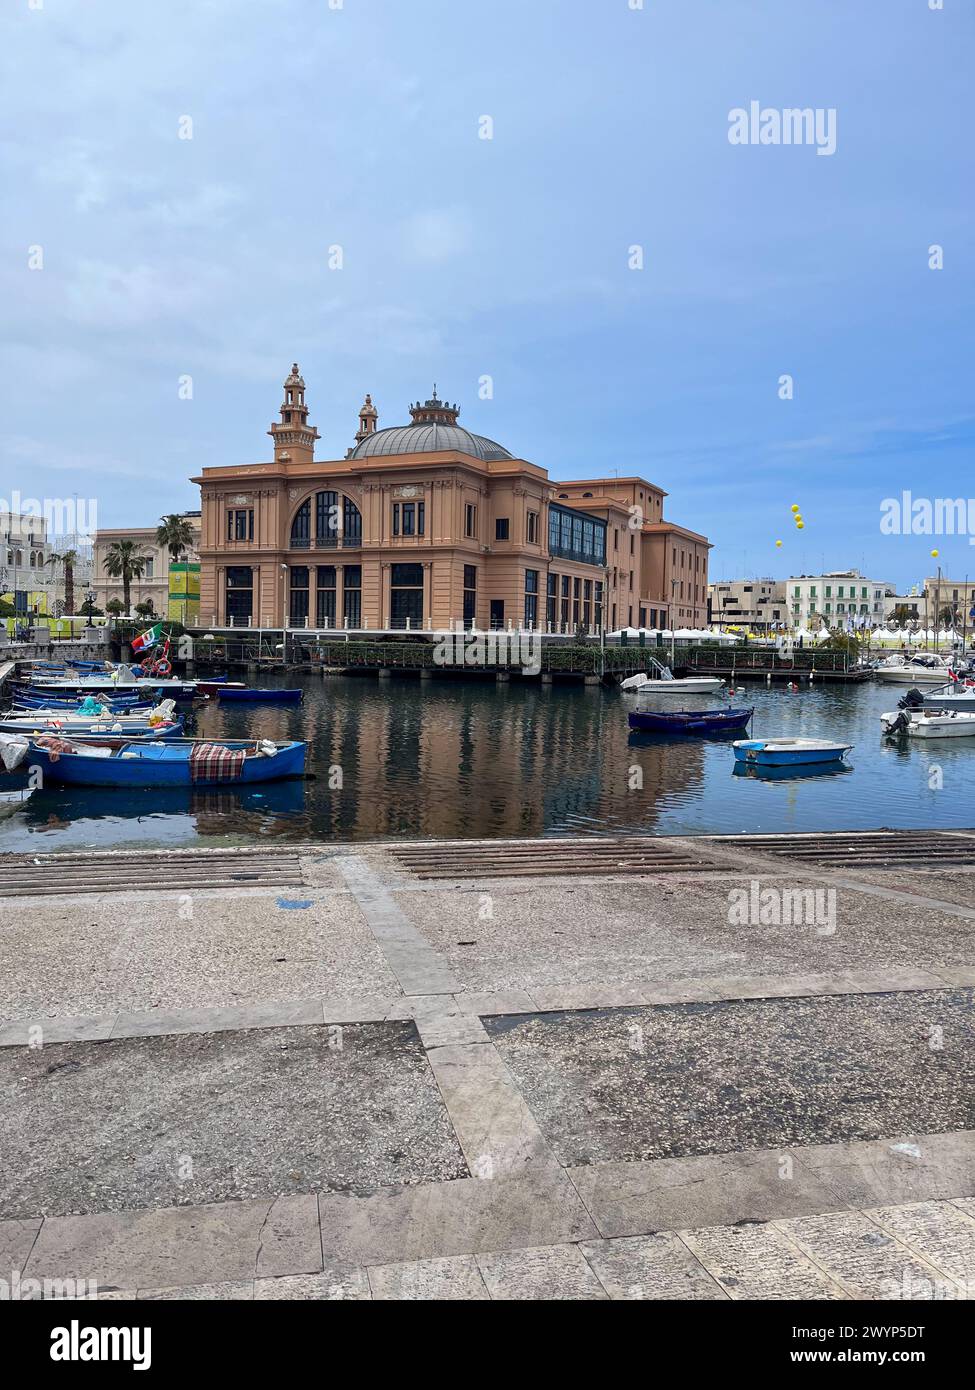 Italy,Teatro Margherita,Theater Margherita,boats in the Apulia region, Adriatic sea, Southern Italy, Metropolitan city of Bari, Muraglia di Bari Stock Photo